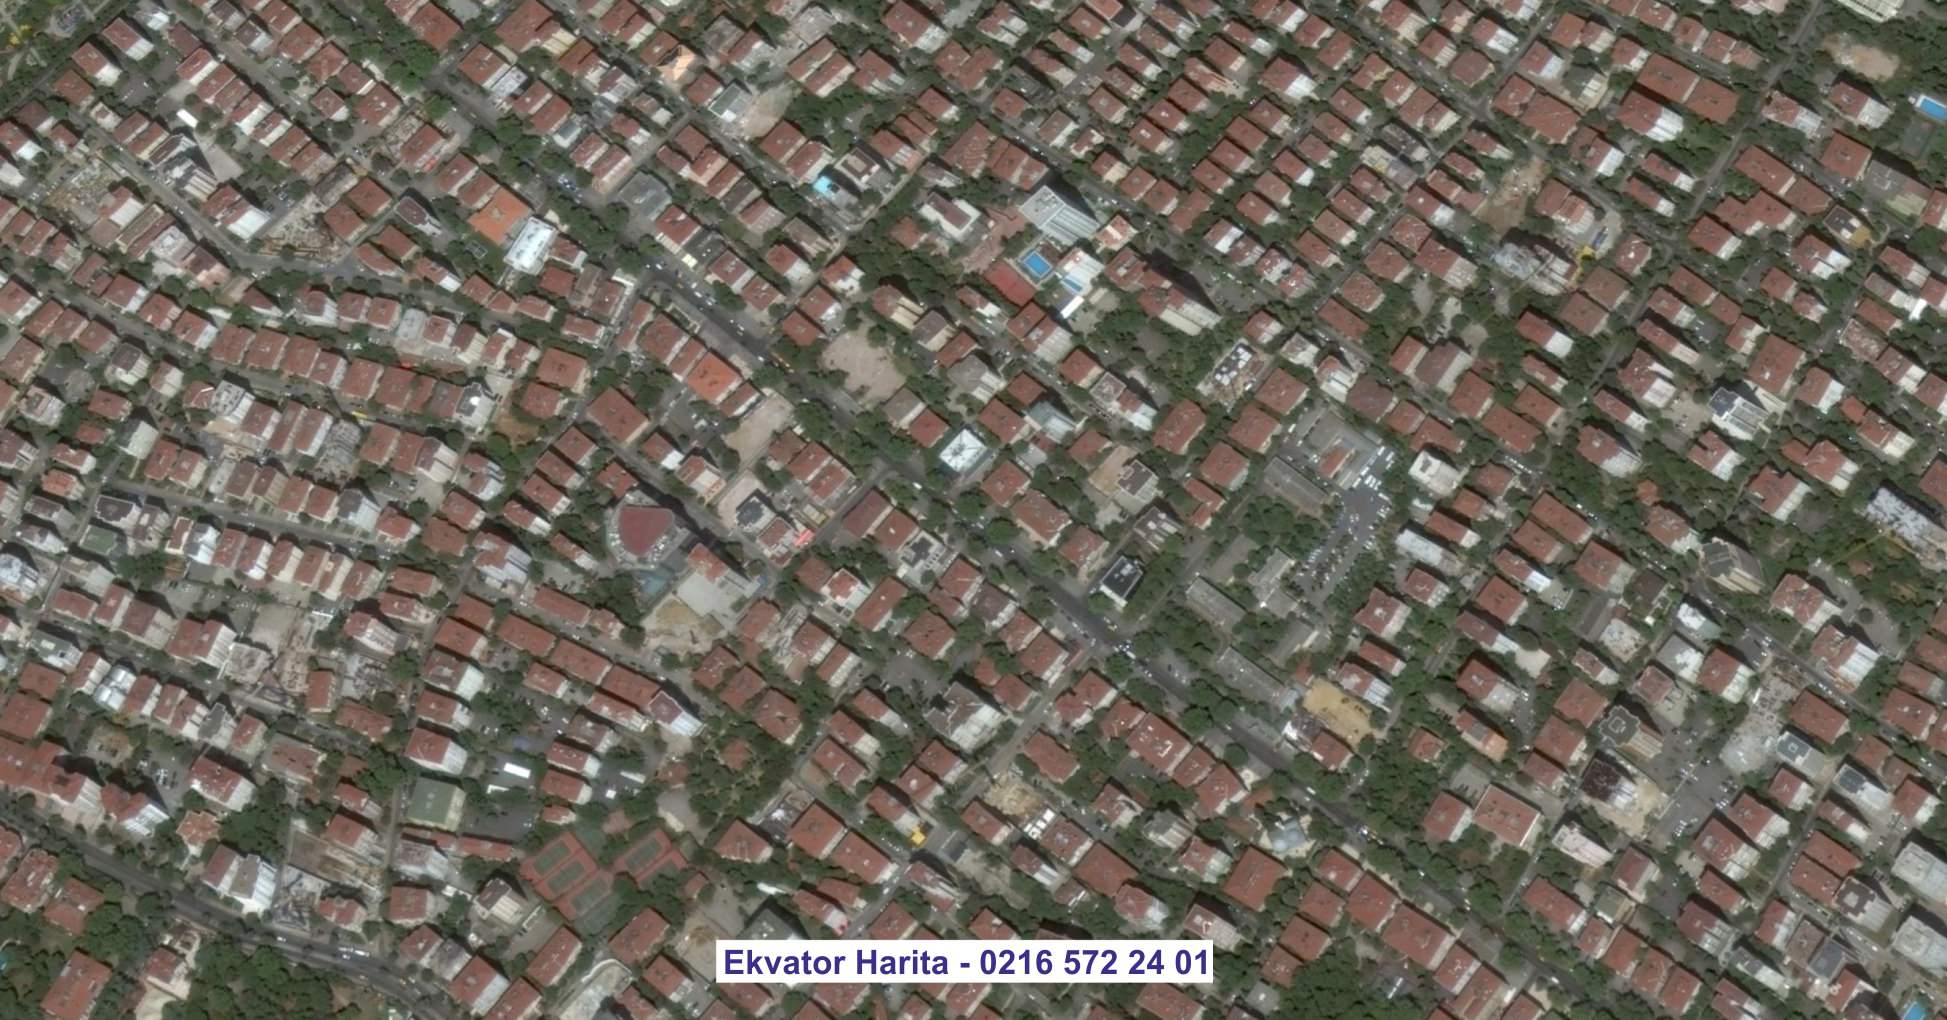 Zaho Uydu Görüntüsü Örnek Fotoğrafı